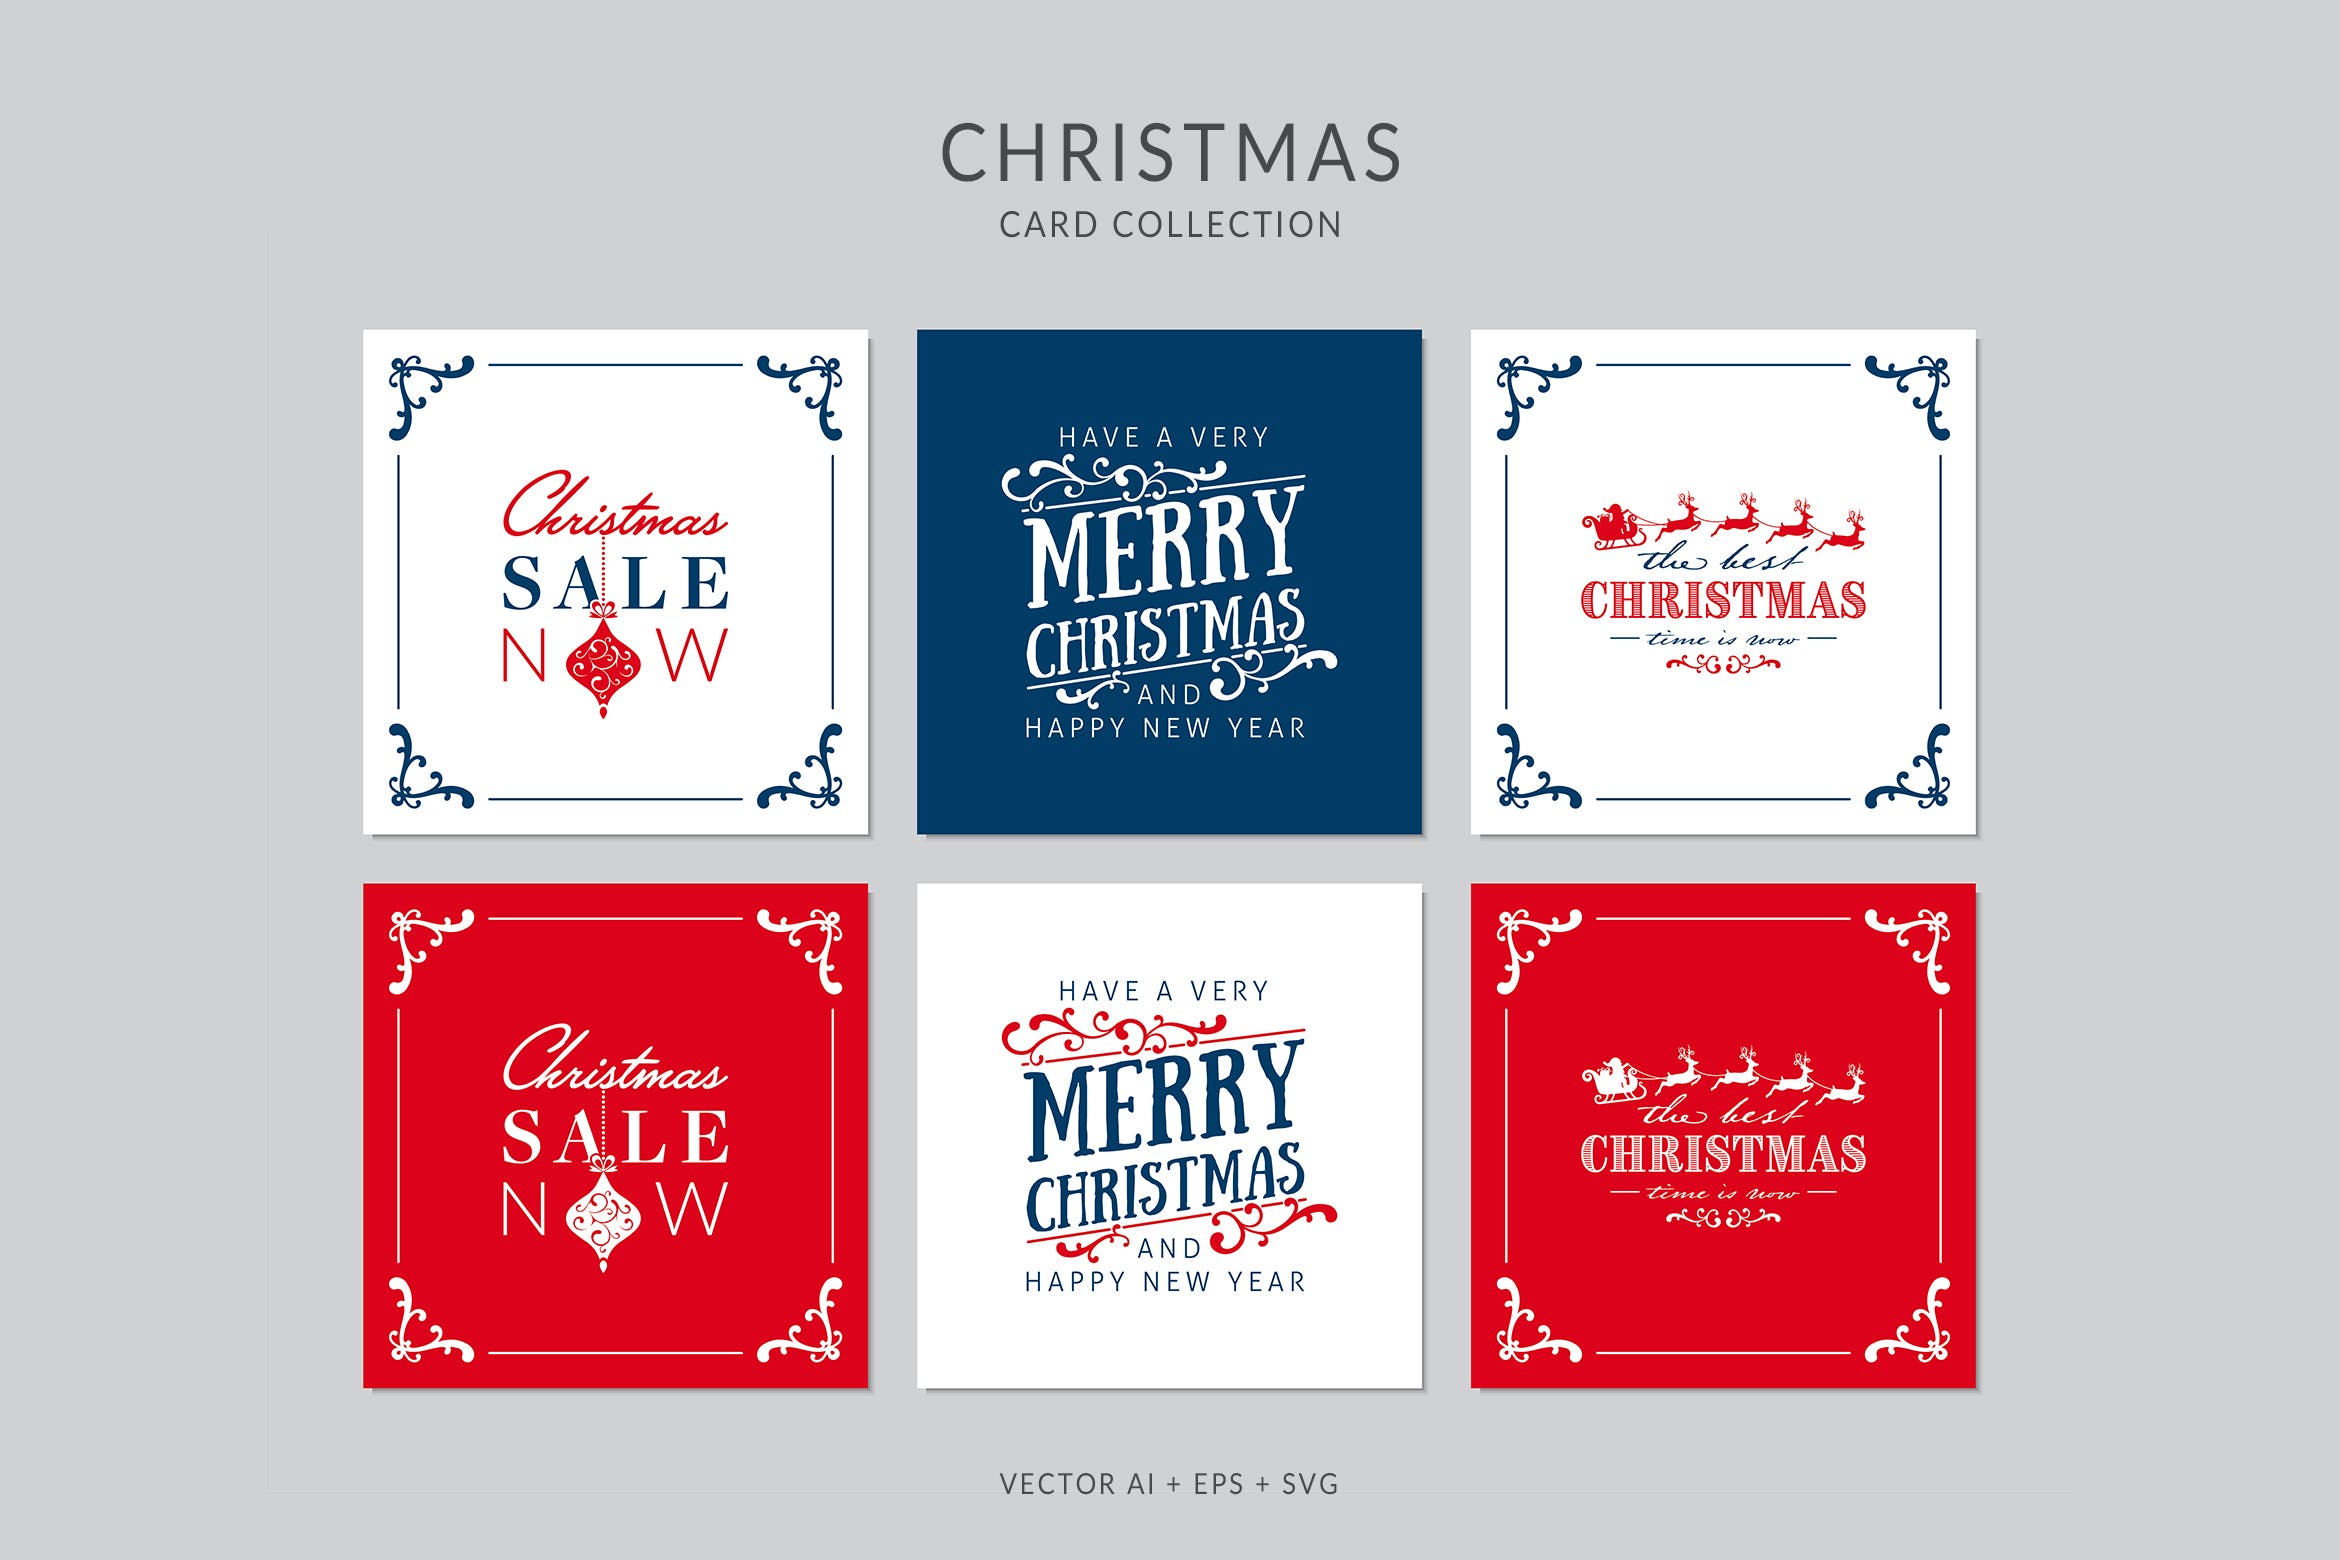 复古装饰框风格圣诞节贺卡设计模板 Christmas Greeting Card Vector Set插图